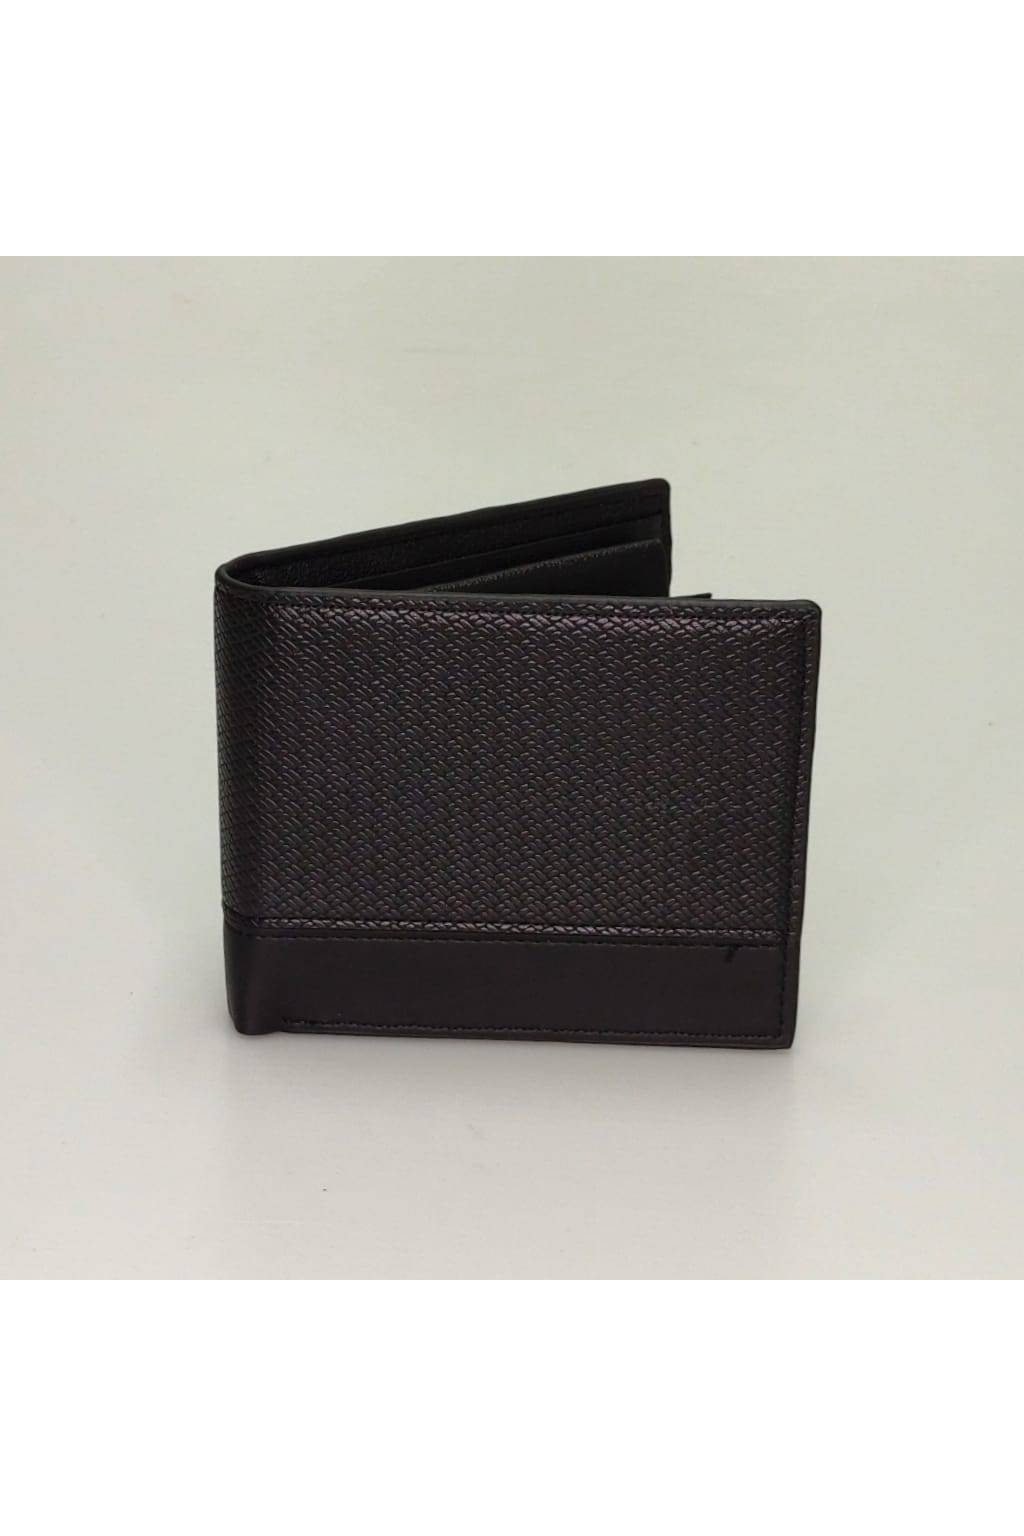 Pánska peňaženka B6894 čierna www.kabelky vypredaj (3)